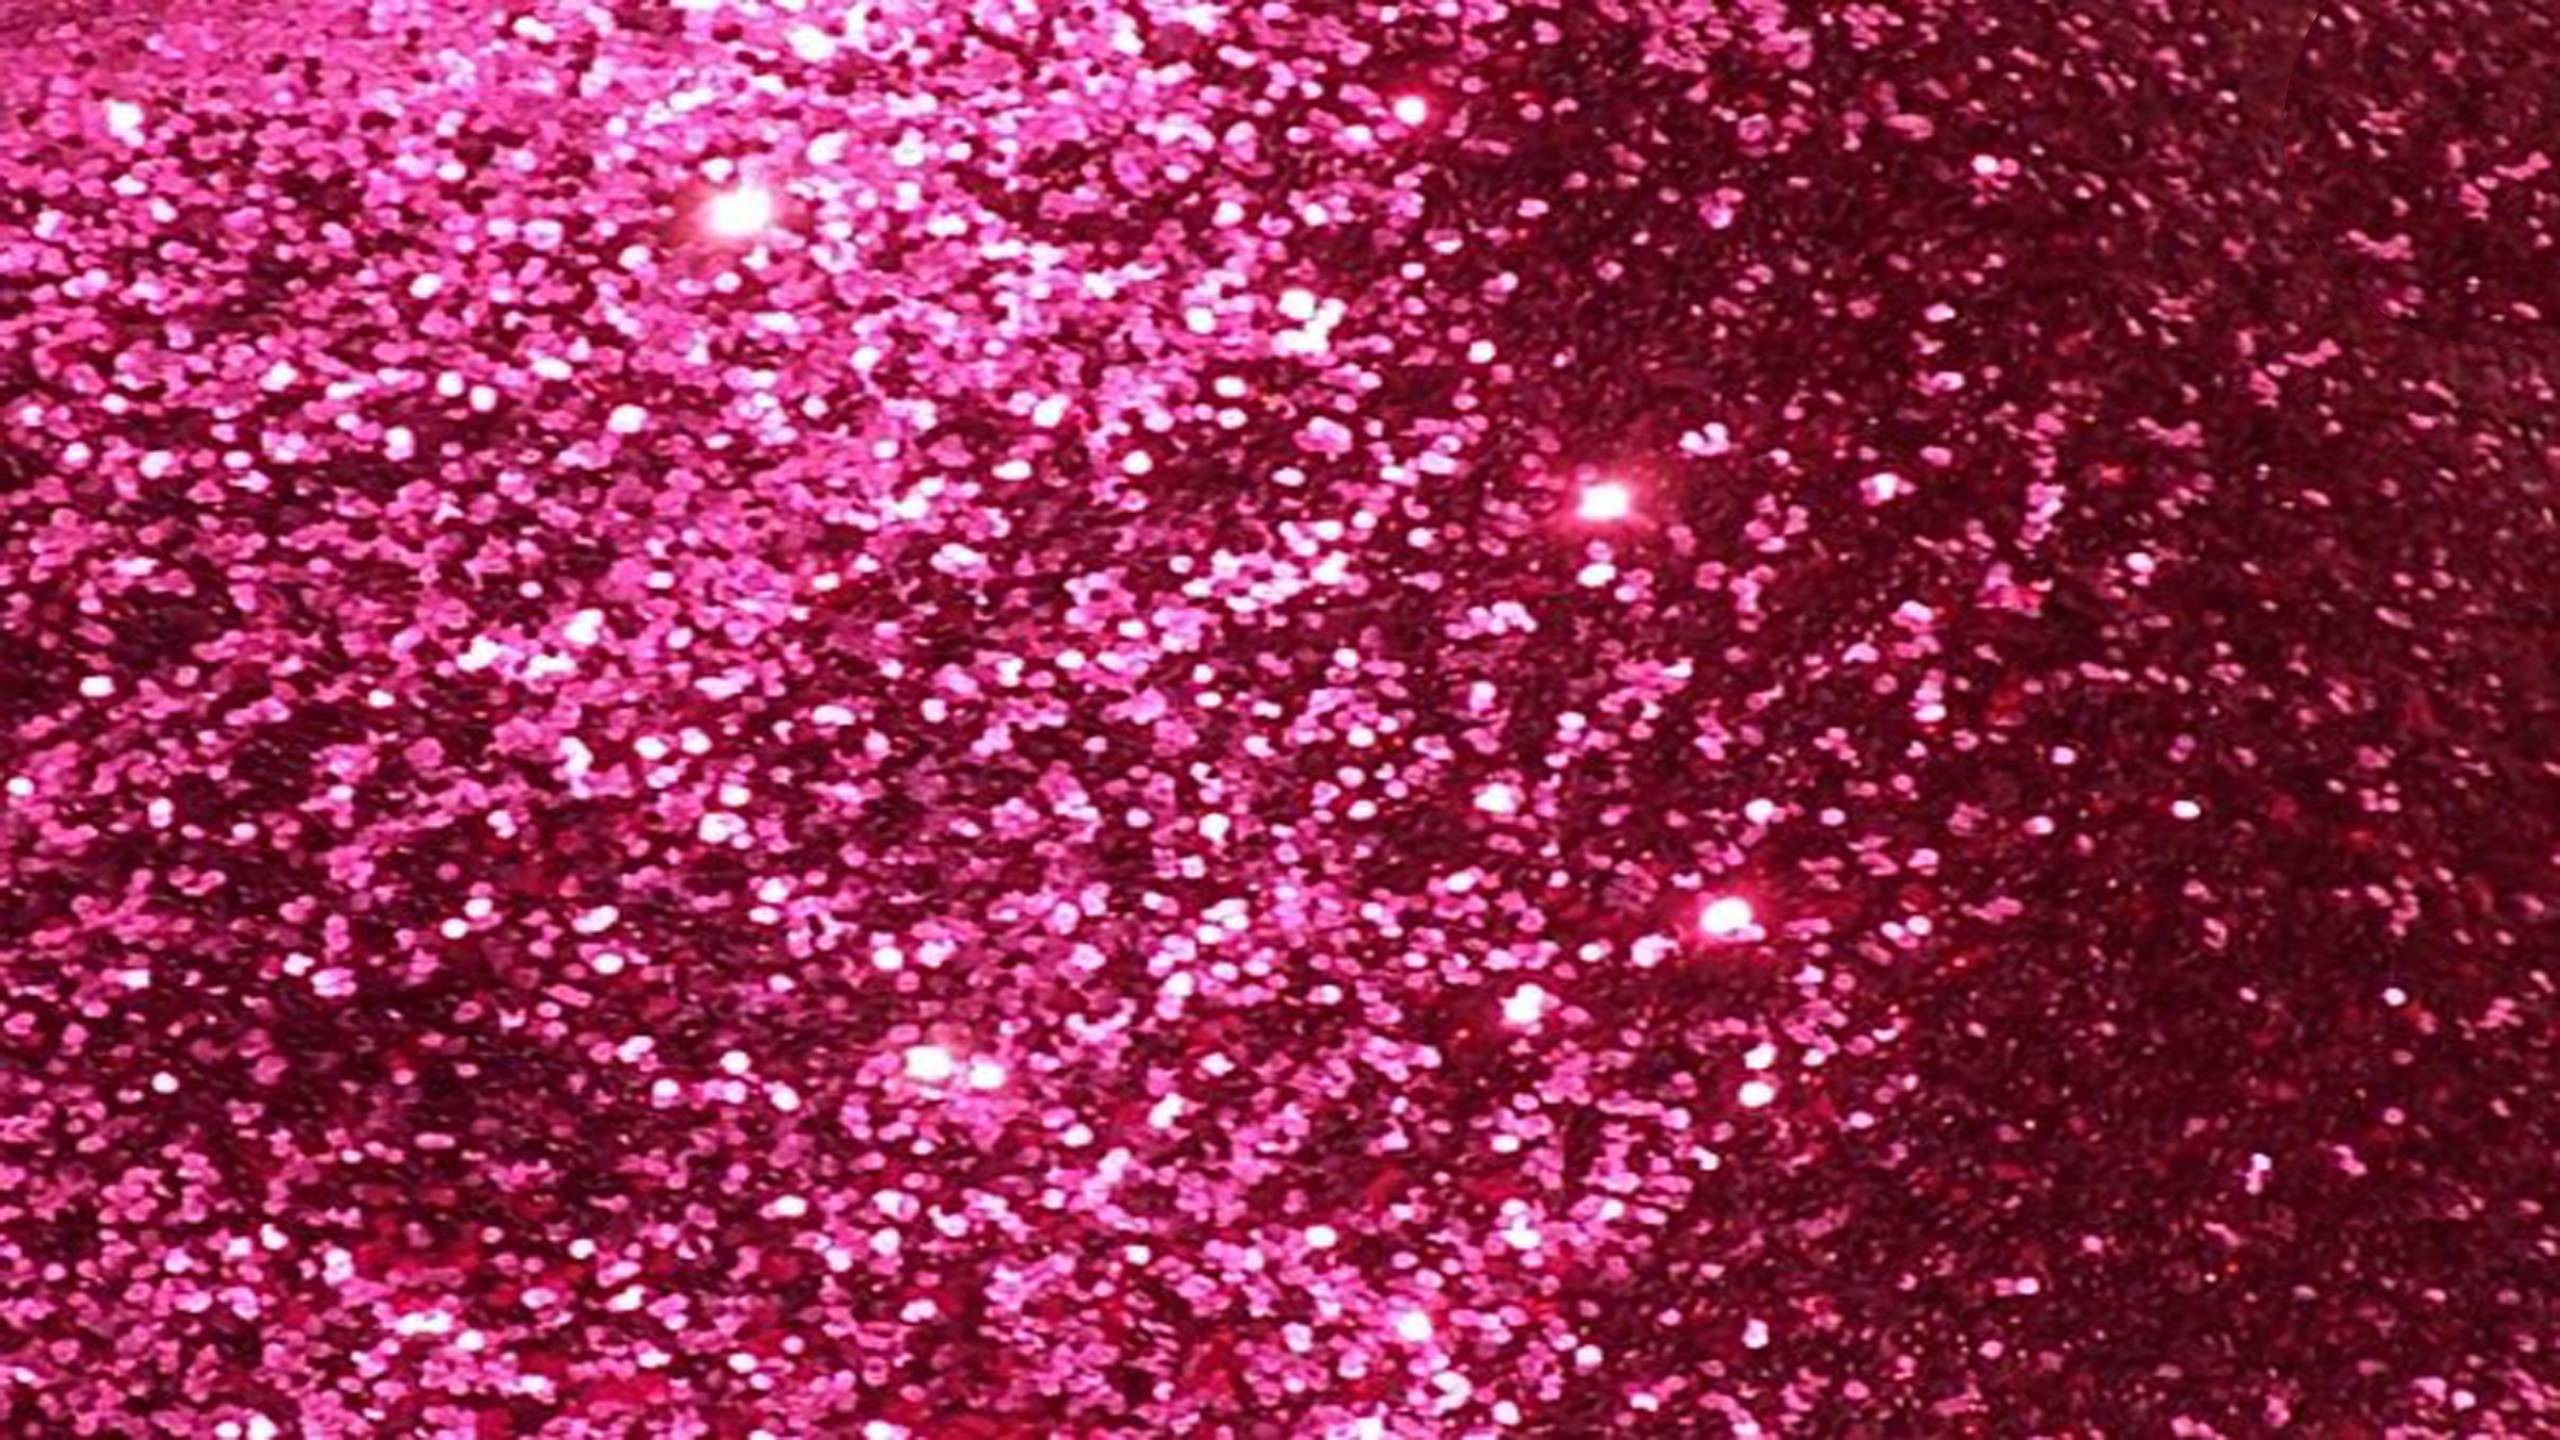 2560x1440 Pink Glitter Desktop Wallpaper | Best Free Wallpaper